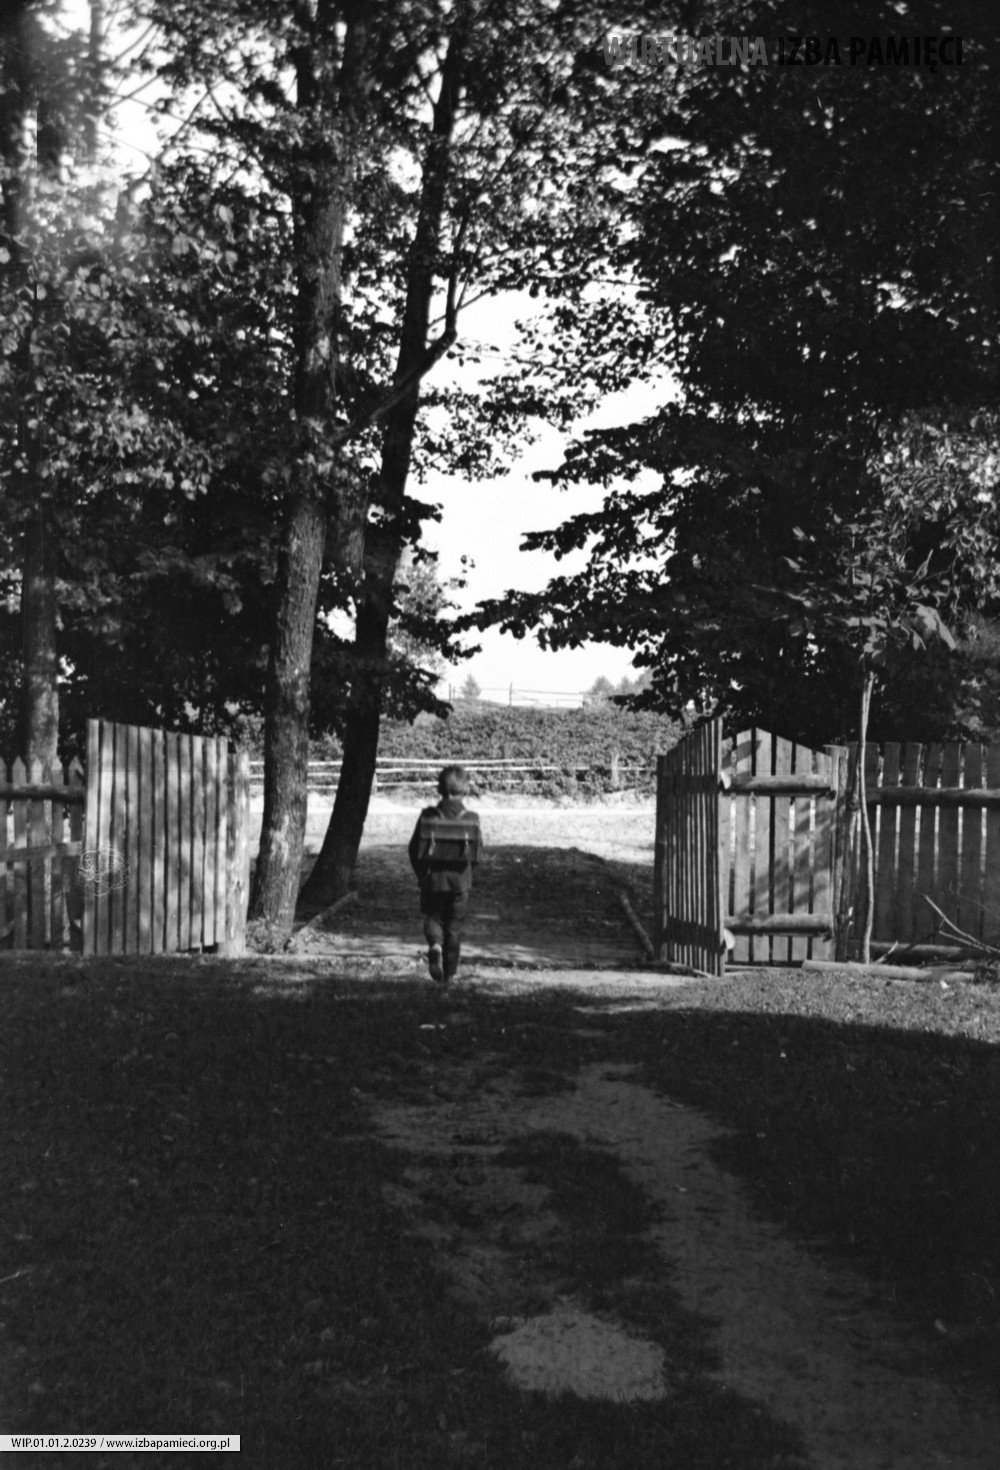 1969. Stanisław Hubacz w drodze do szkoły